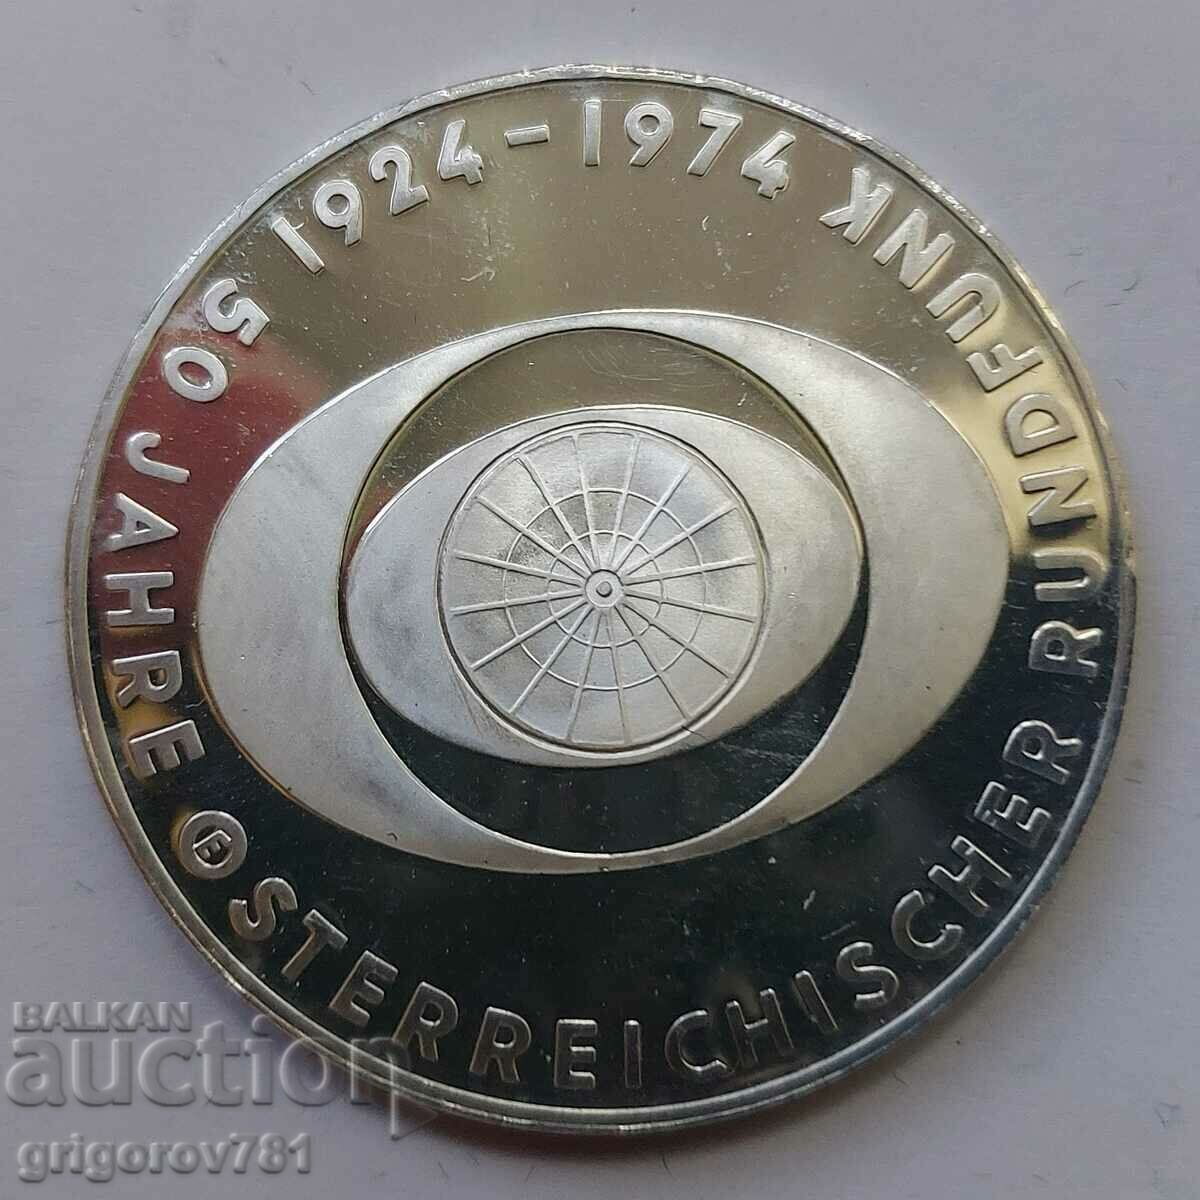 50 Shillings Argint Austria 1974 Dovada - Moneda de argint #21